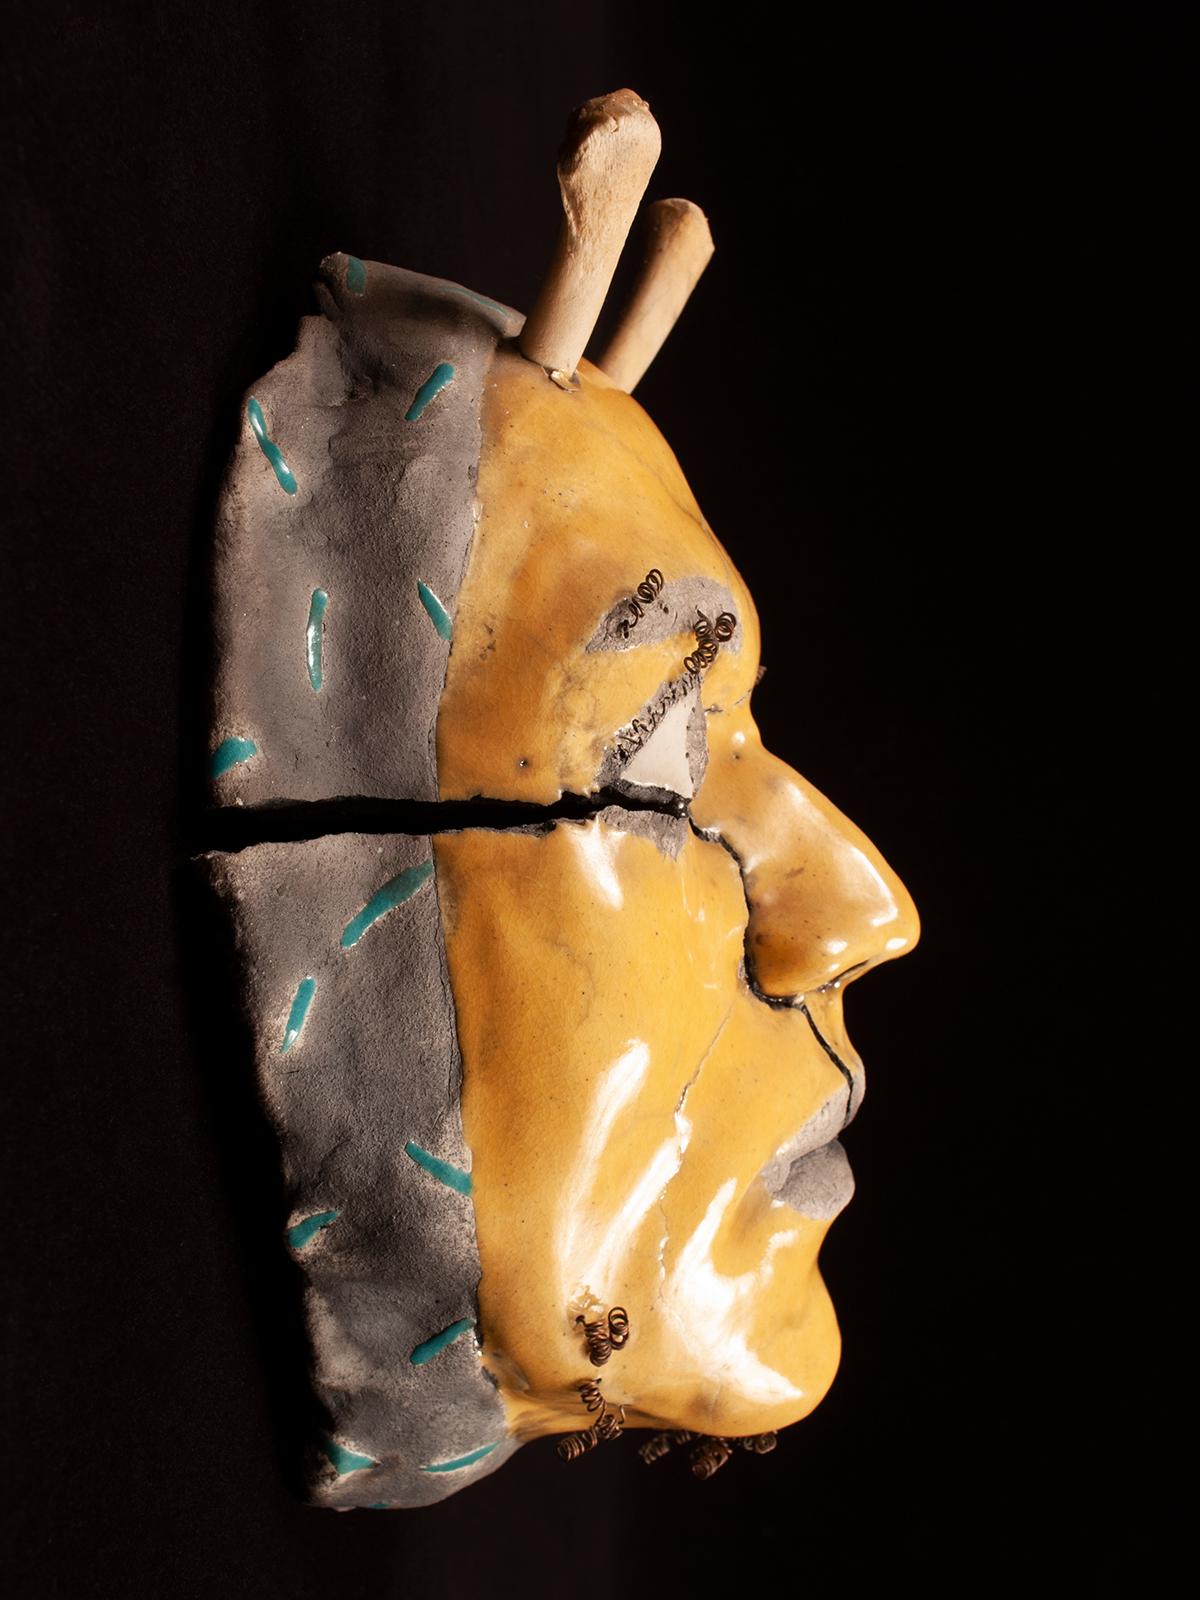 Masque tribal contemporain en céramique Raku avec bois de cerf par Argon

Un masque en céramique cuit au raku par l'artiste Argon, acheté dans les années 1980 à la Galleria de la Raza à San Francisco. L'expression est celle de l'émerveillement,